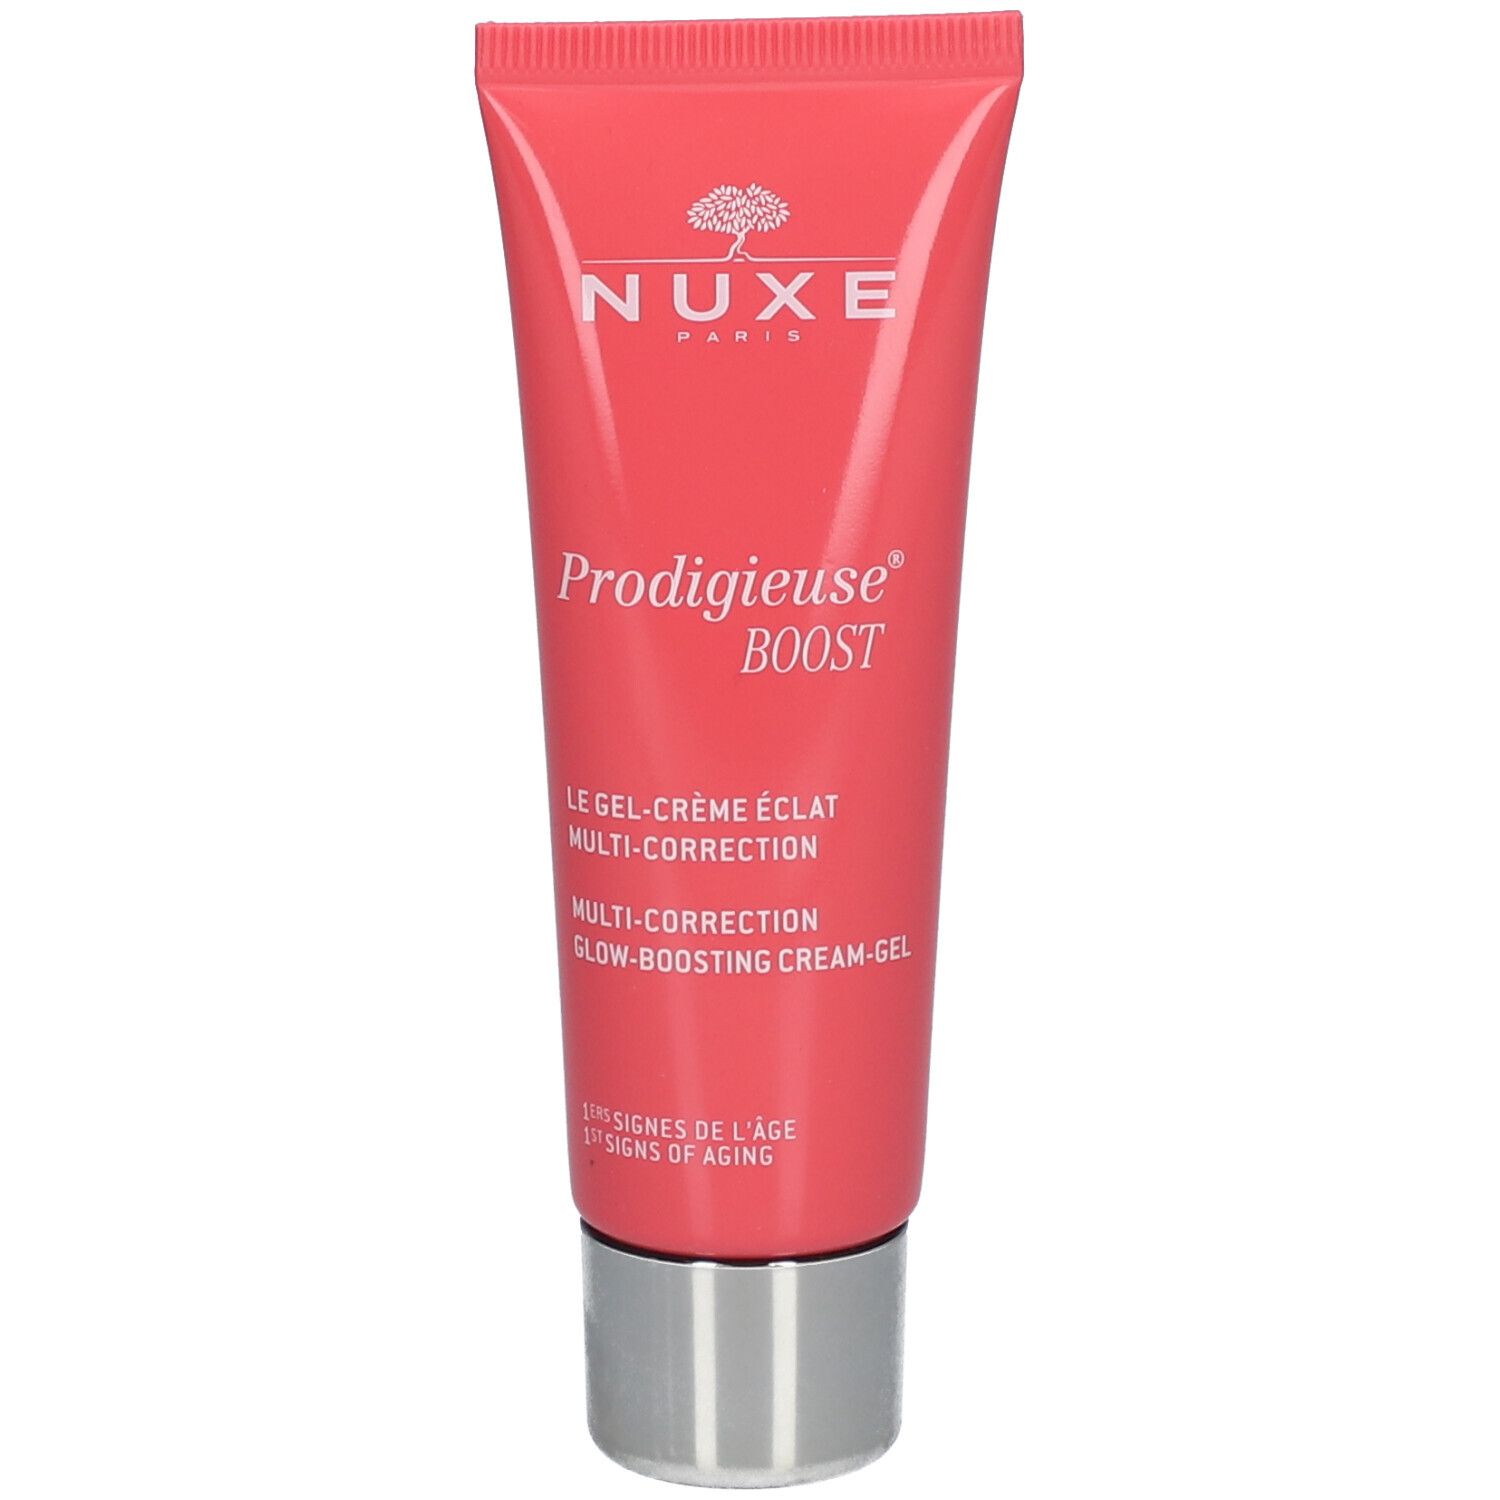 Nuxe Prodigieuse® Boost Le Gel-Crème Éclat Multi-Correction Peaux Normales 40 ml gel